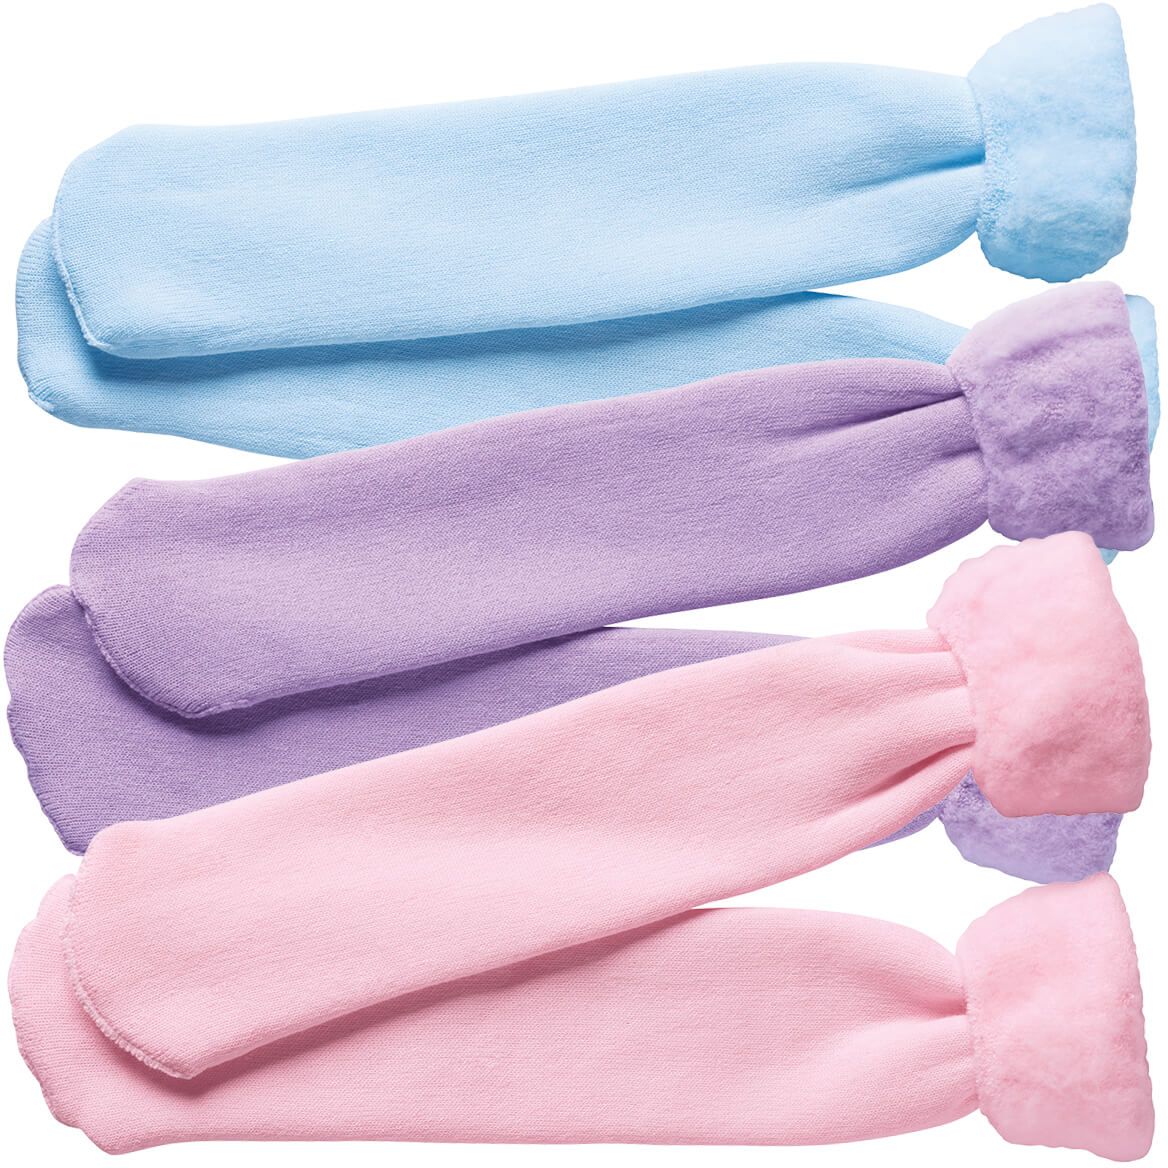 Bed Socks, 3-Pair Pack + '-' + 351217